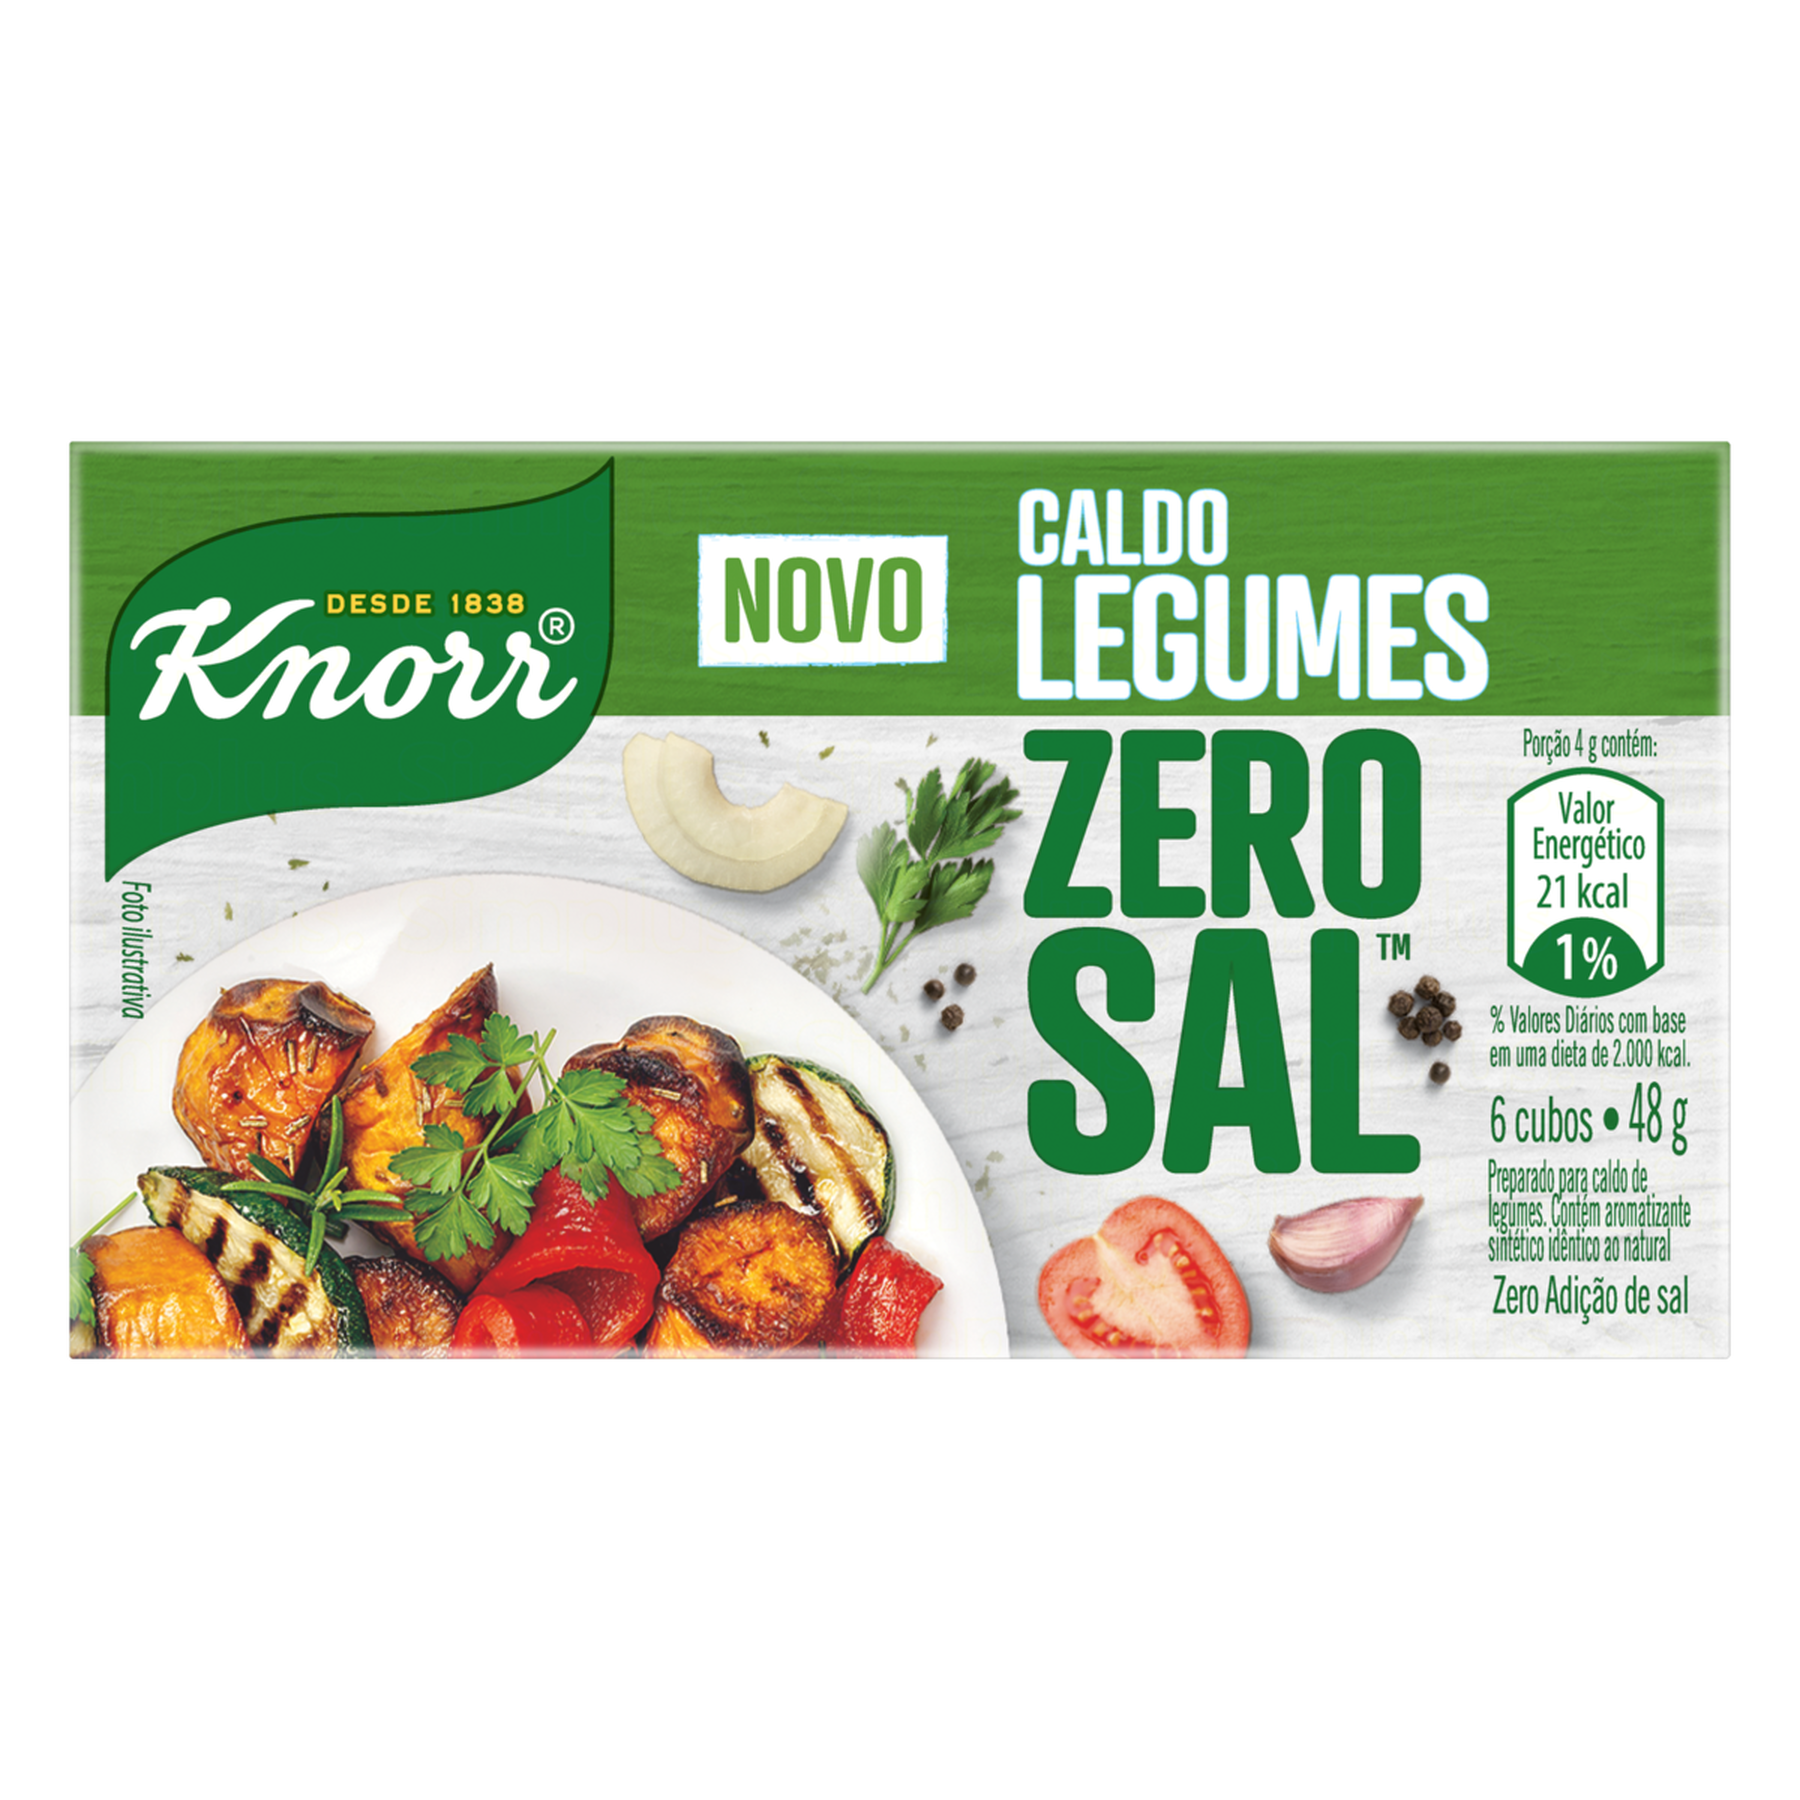 Caldo em Tablete Legumes Zero Sal Knorr Caixa 48g 6 Unidades